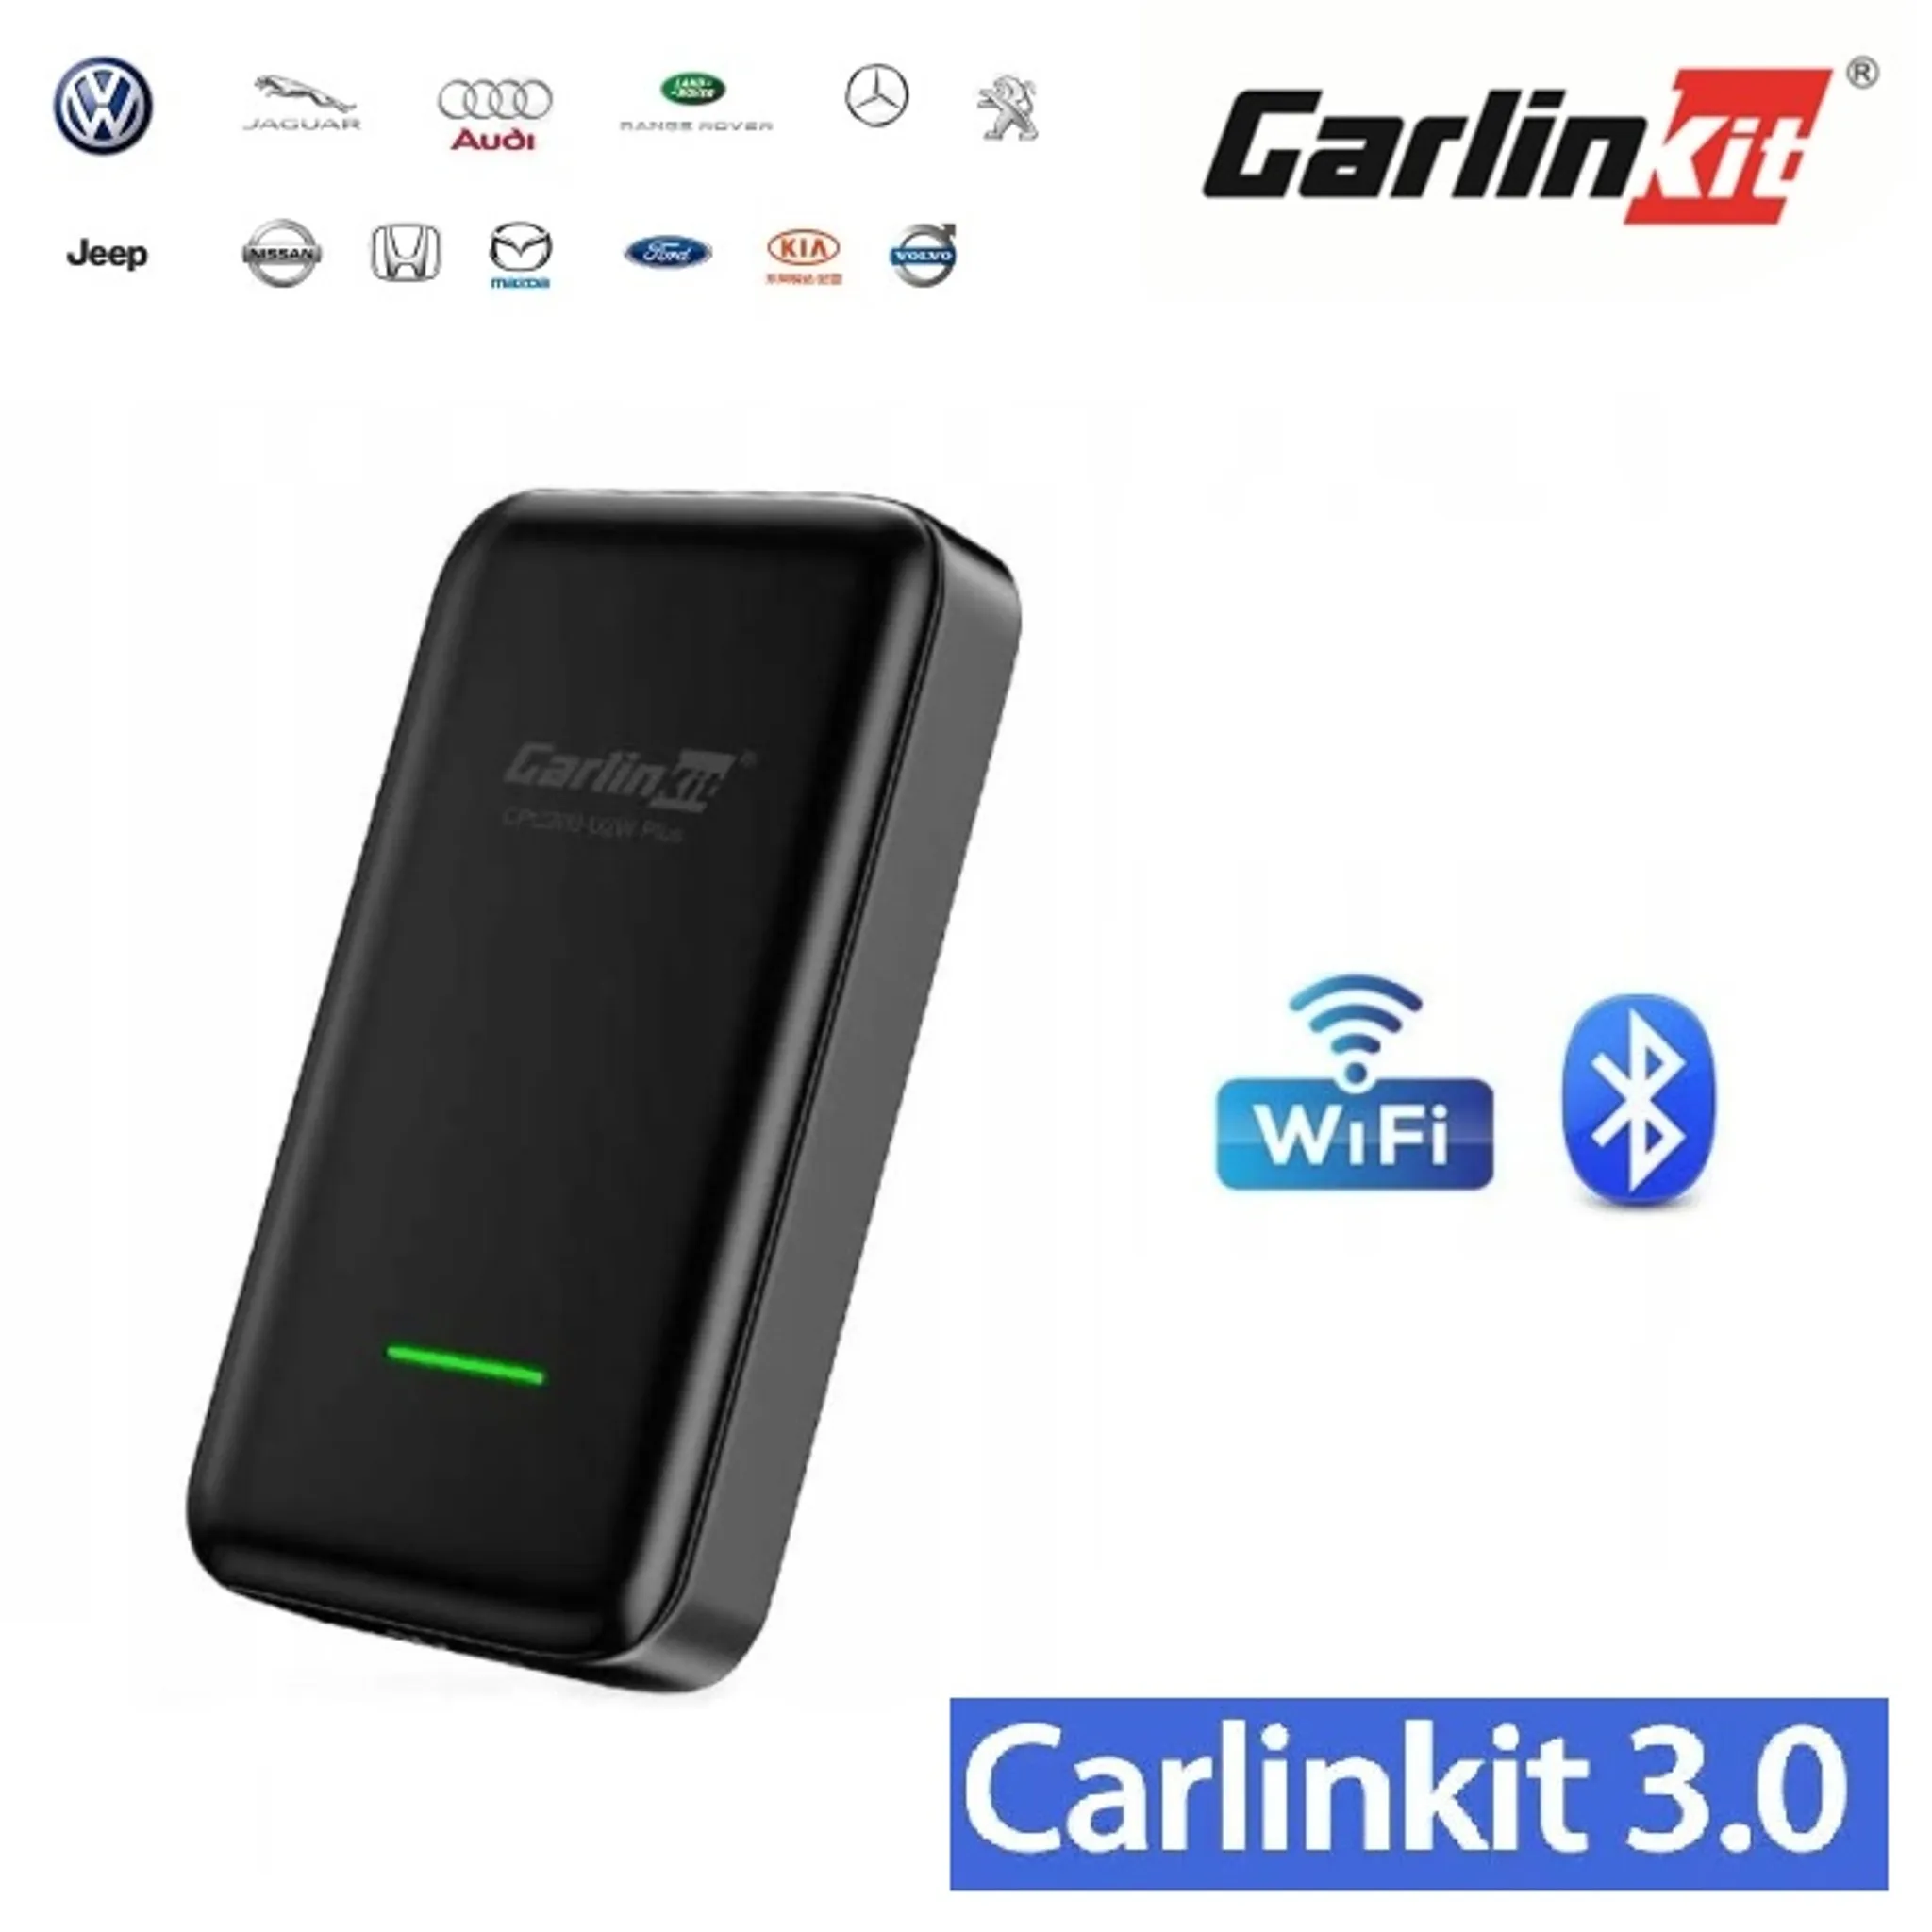 Carlinkit 5.0 2Air Der neueste Wireless CarPlay und Wireless Android Auto